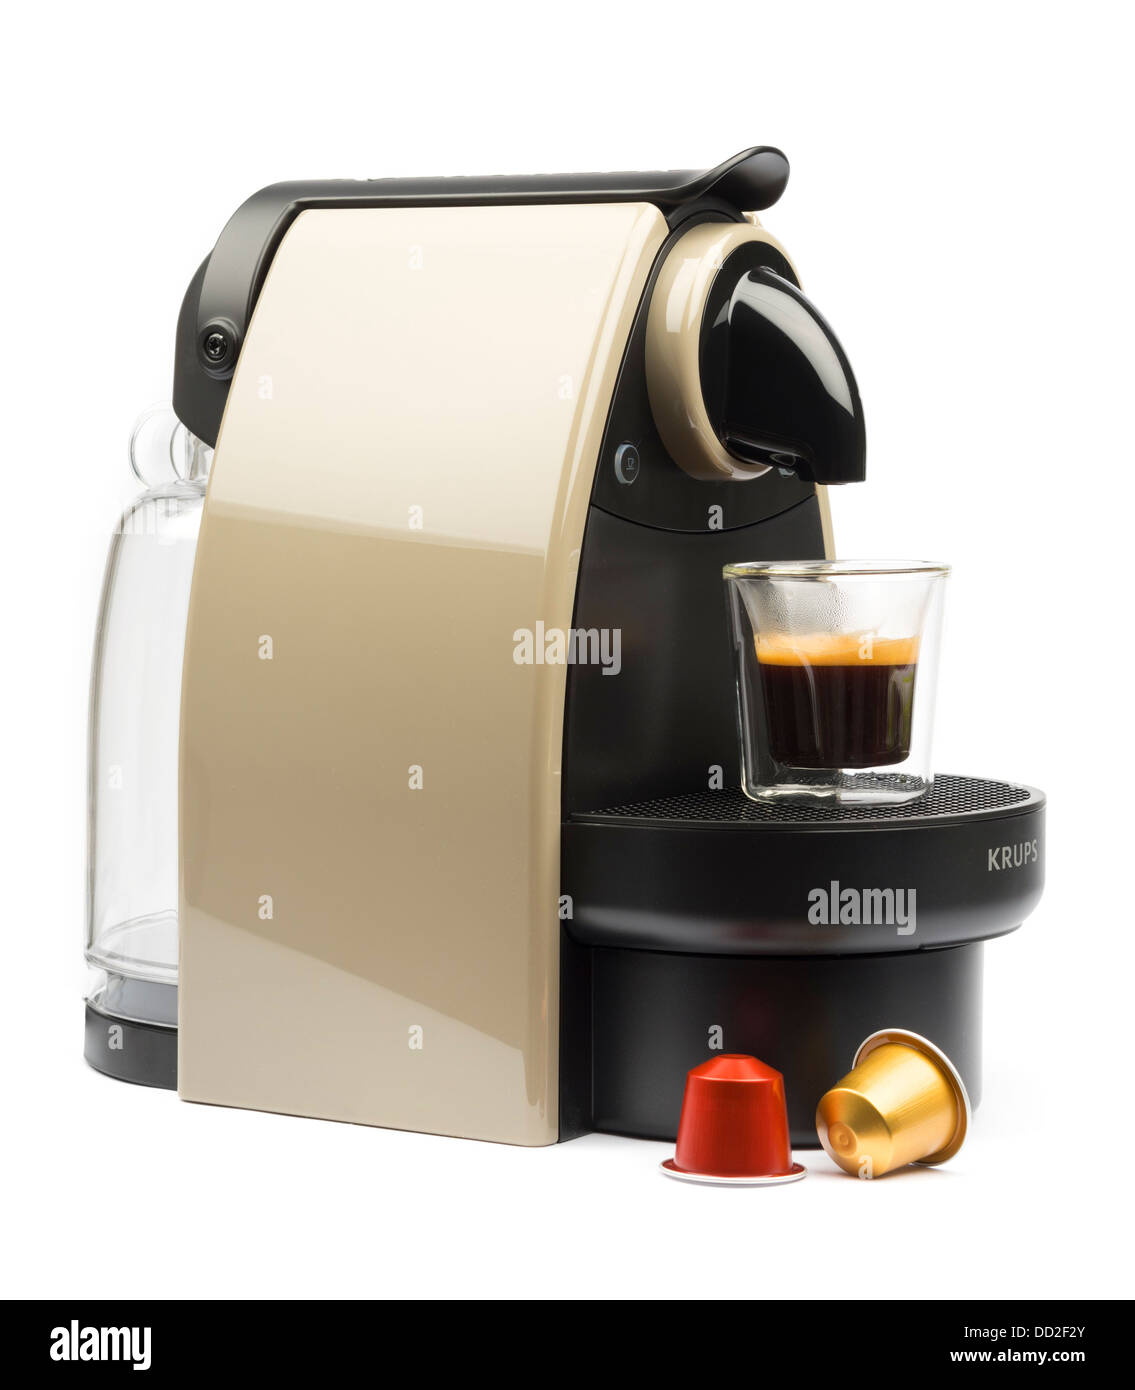 Essenza Krups XN 2140 automatique machine à café Nespresso Terre découper isolé sur fond blanc Banque D'Images